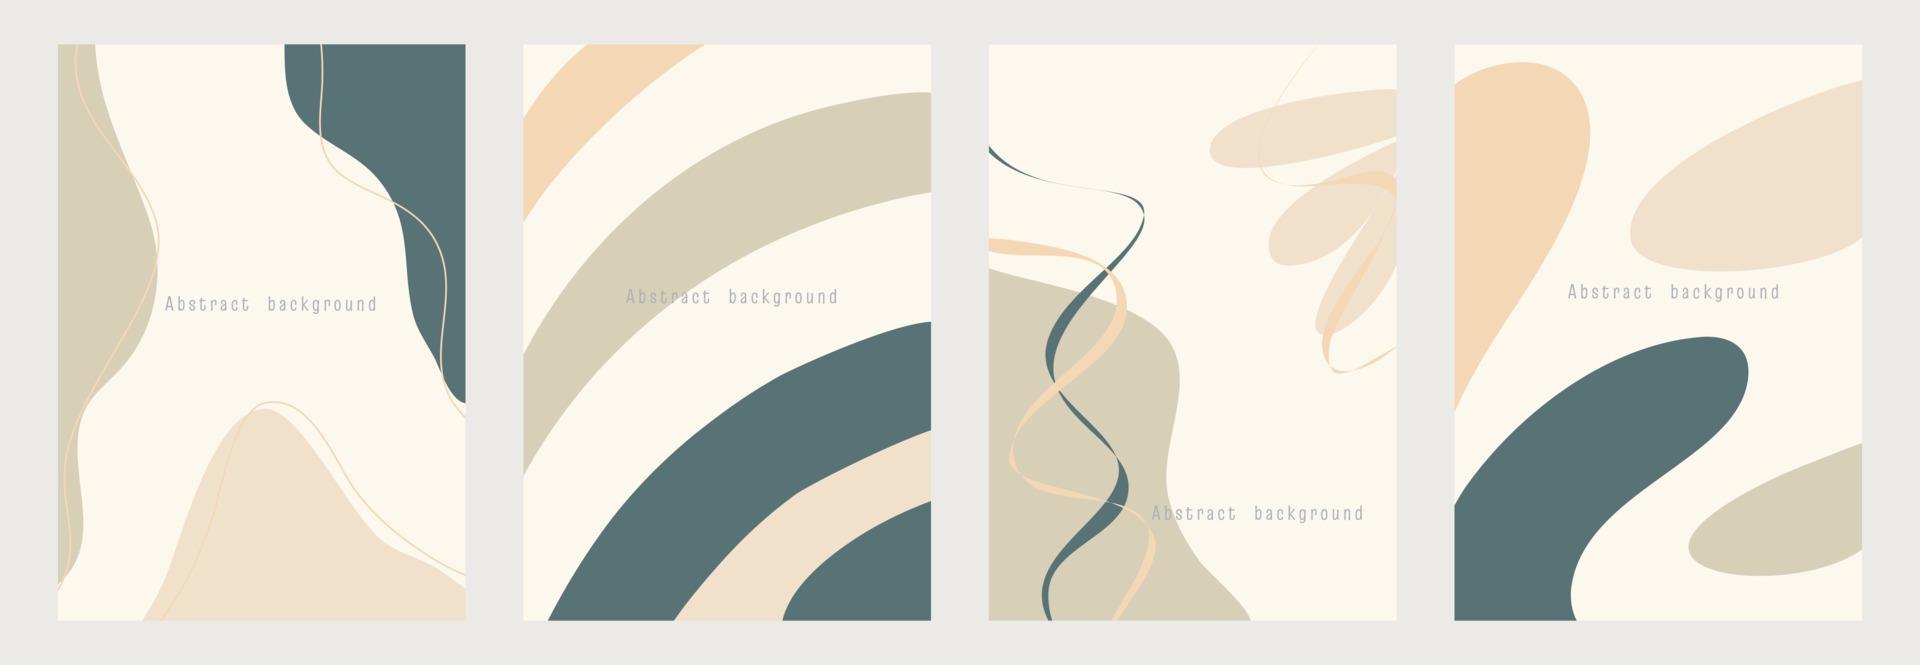 abstrakt bakgrund med former och linjekonst. kopiera utrymme för text. vektor illustration